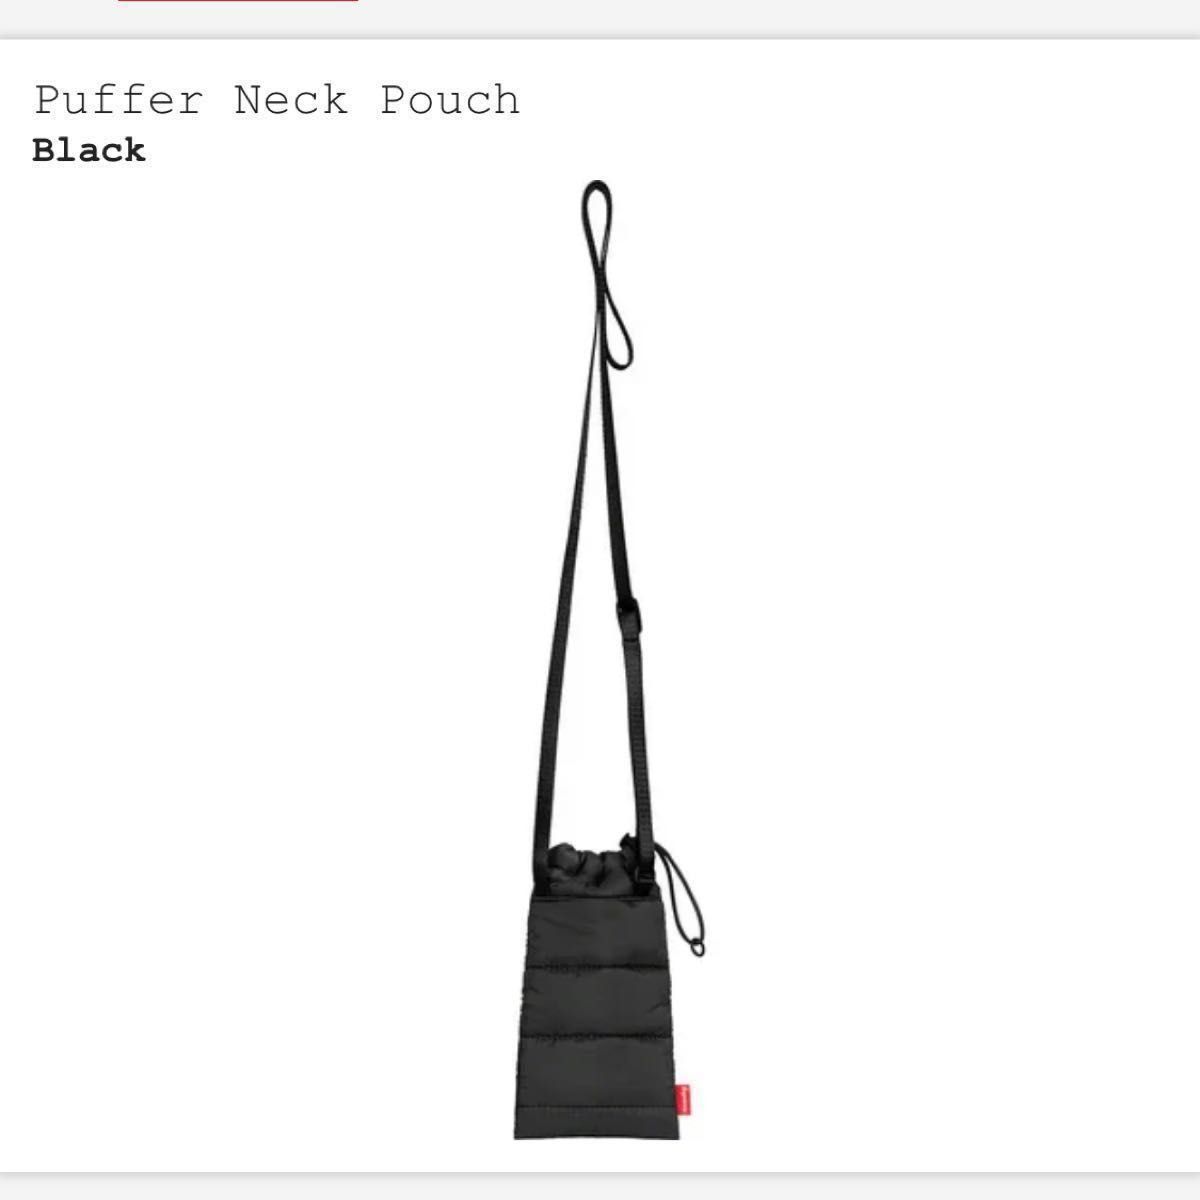 Supreme Puffer Neck Pouch "Black"